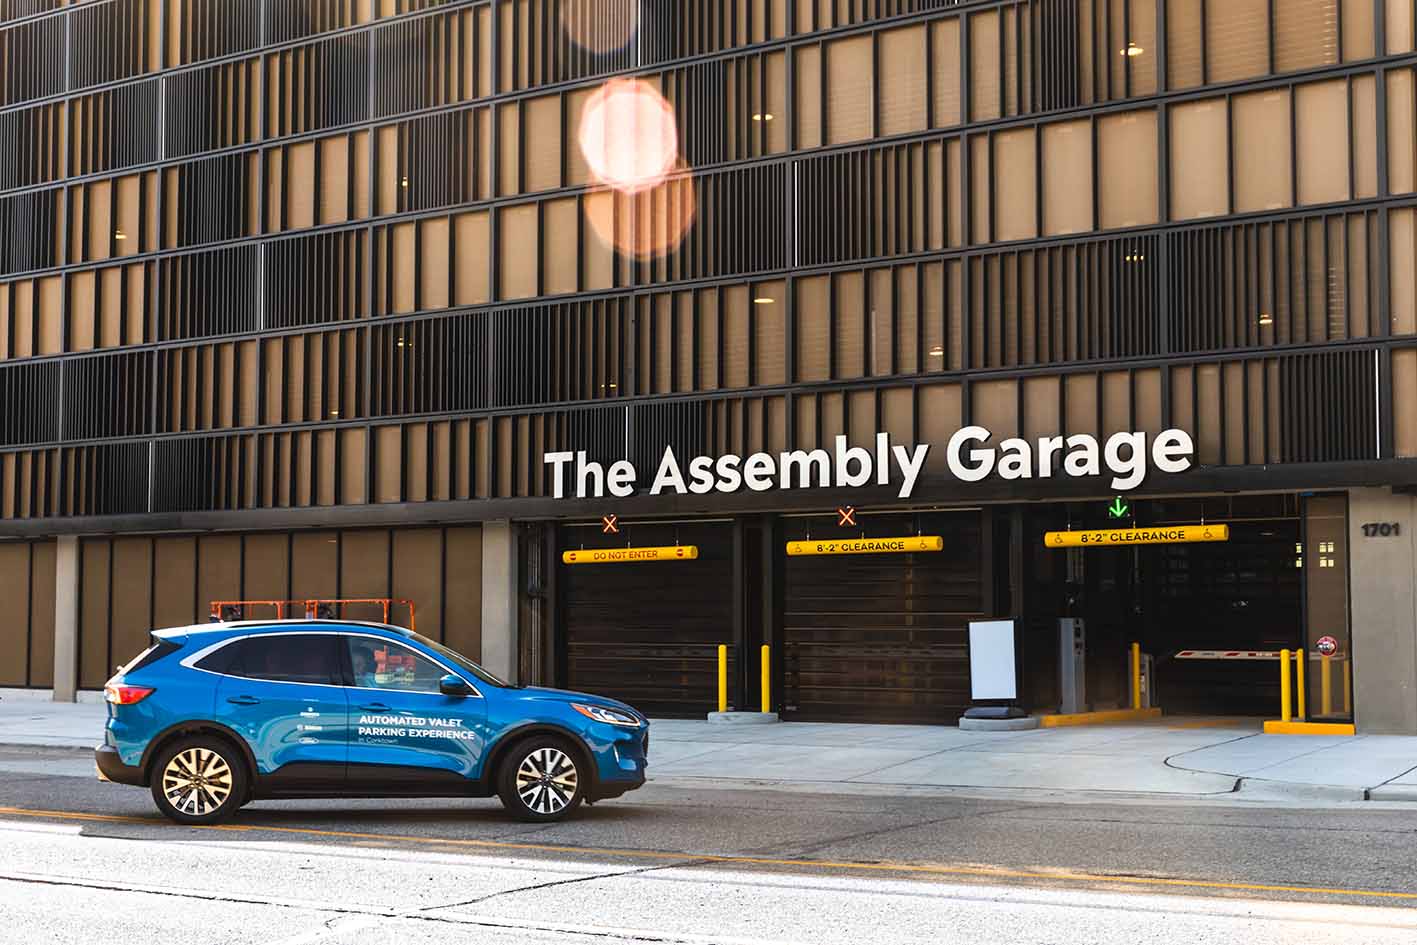 Guida autonoma: Ford, Bedrock e Bosch esplorano una tecnologia avanzata per semplificare il parcheggio.